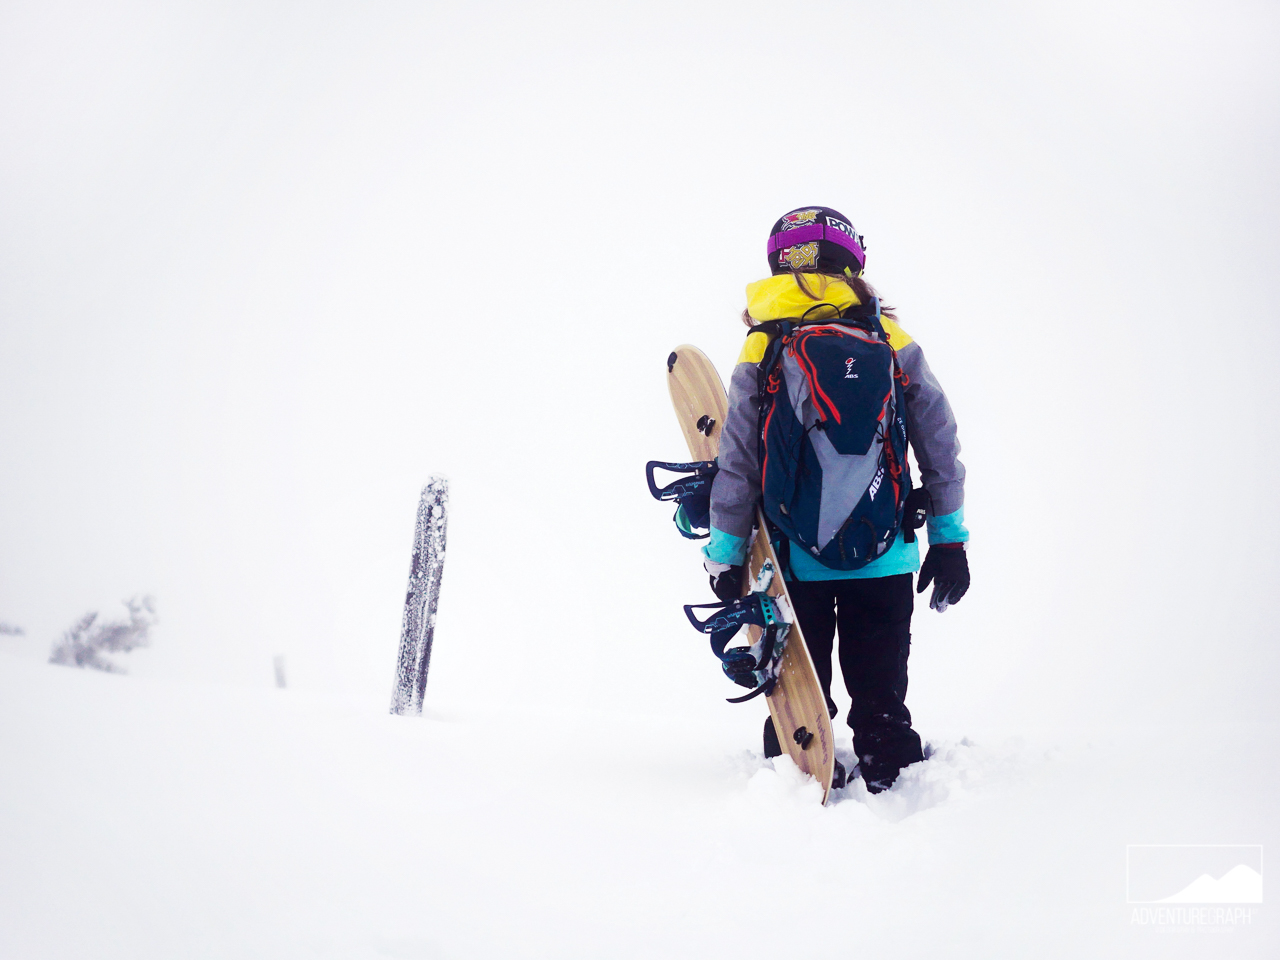 Spliboarding girl in the backcountry for freeride snowboarding near Innsbruck.